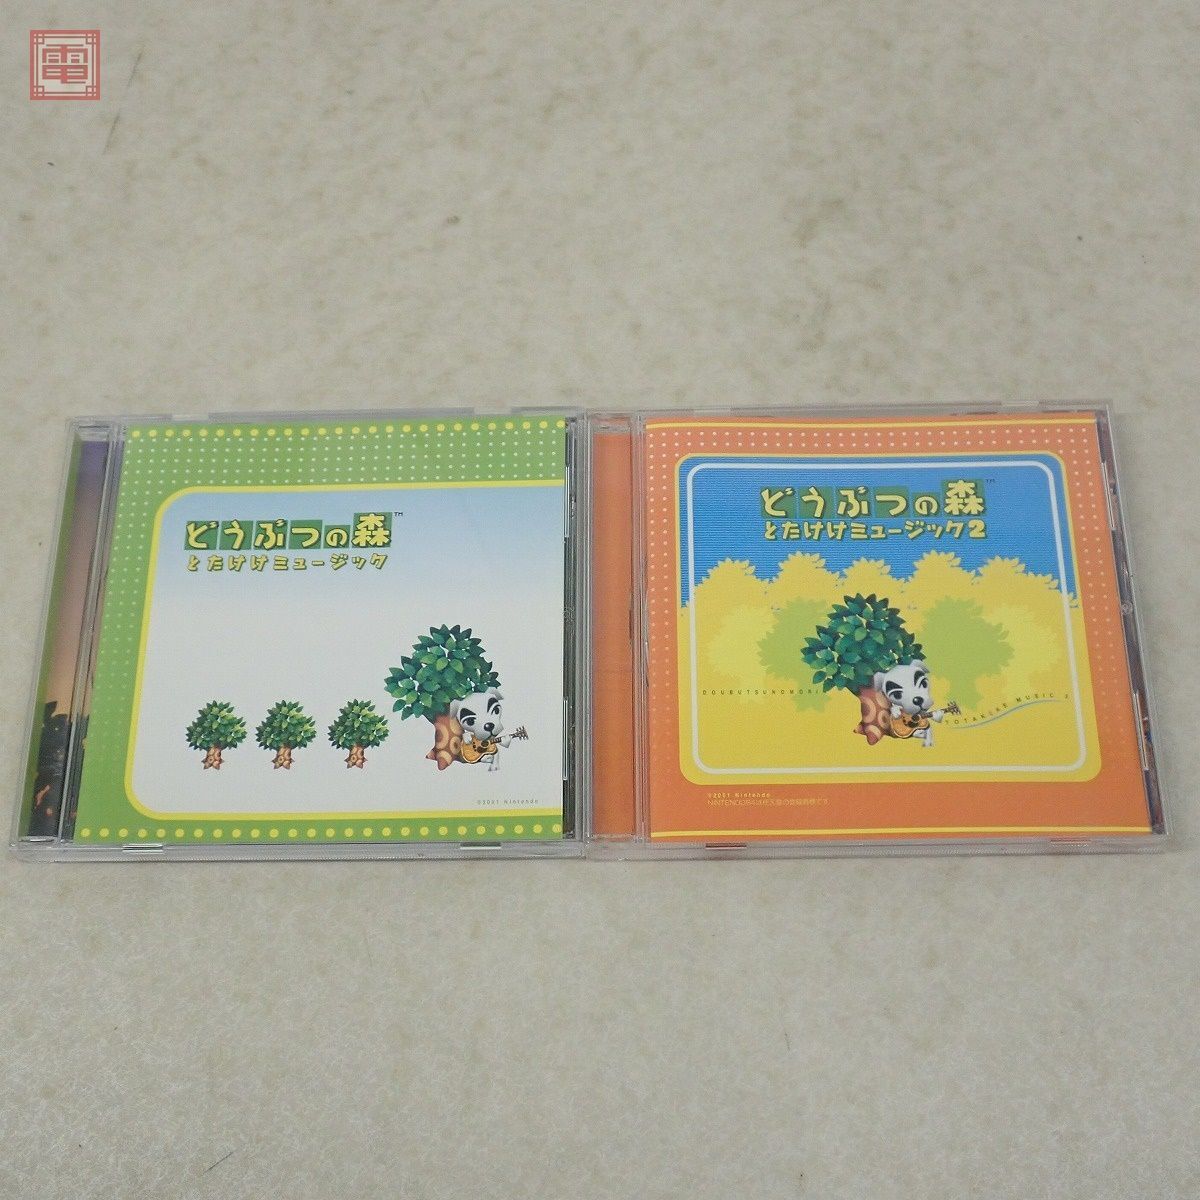  гарантия работы товар CD игра саундтрек Animal Crossing .... музыка 1 / 2 2 позиций комплект nintendo Nintendo Enterbrain [10